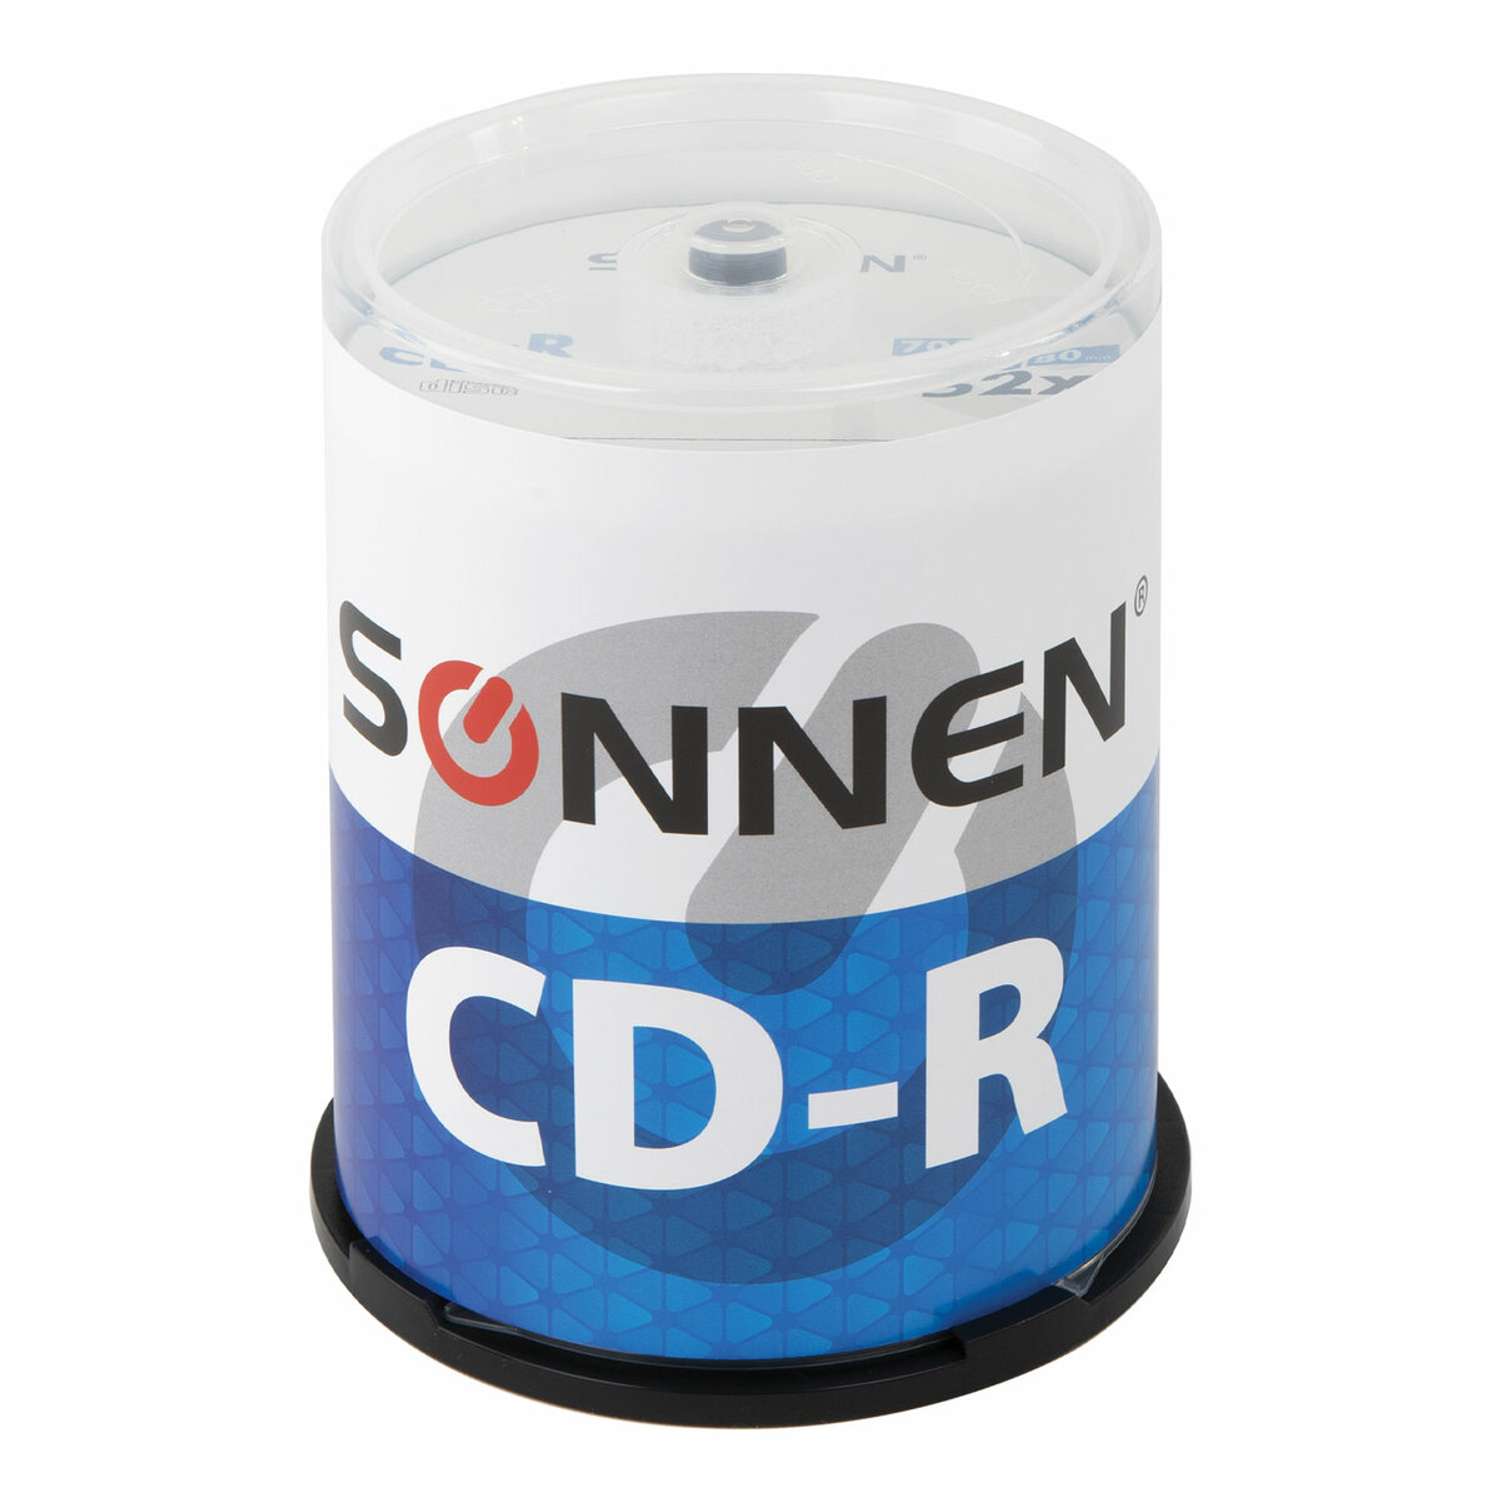 Диск для записи Sonnen CD-R 700Mb 52x Cake 100 шт - фото 1